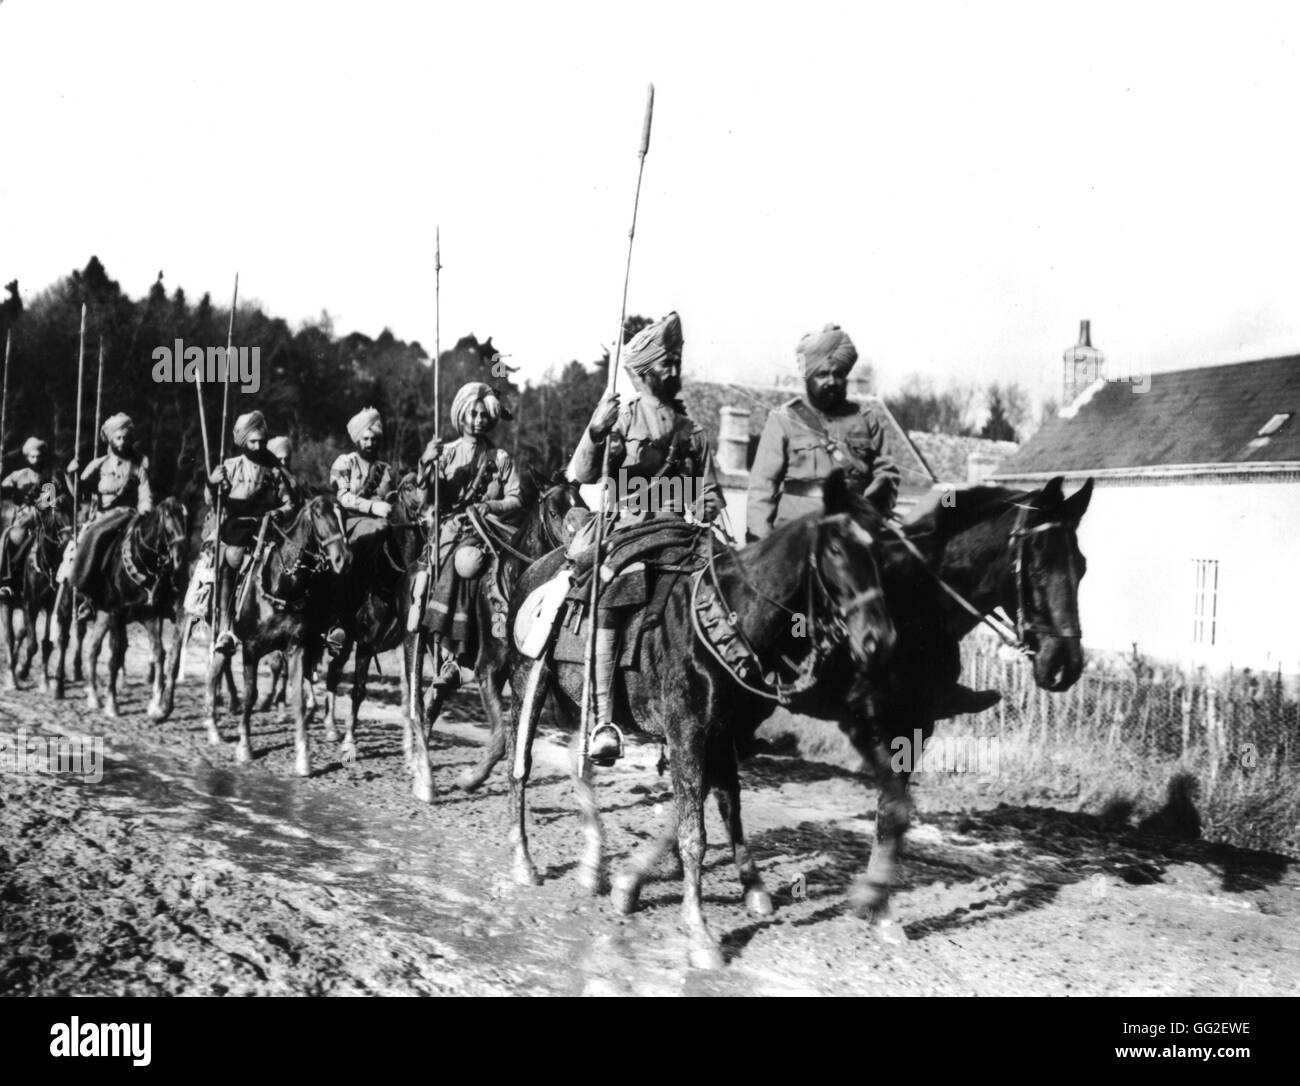 Foto von Rol. Eine Patrouille der indischen Lancers in der Nähe von Amiens Herbst 1914 Frankreich - Weltkrieg Paris. Bibliothèque nationale Stockfoto